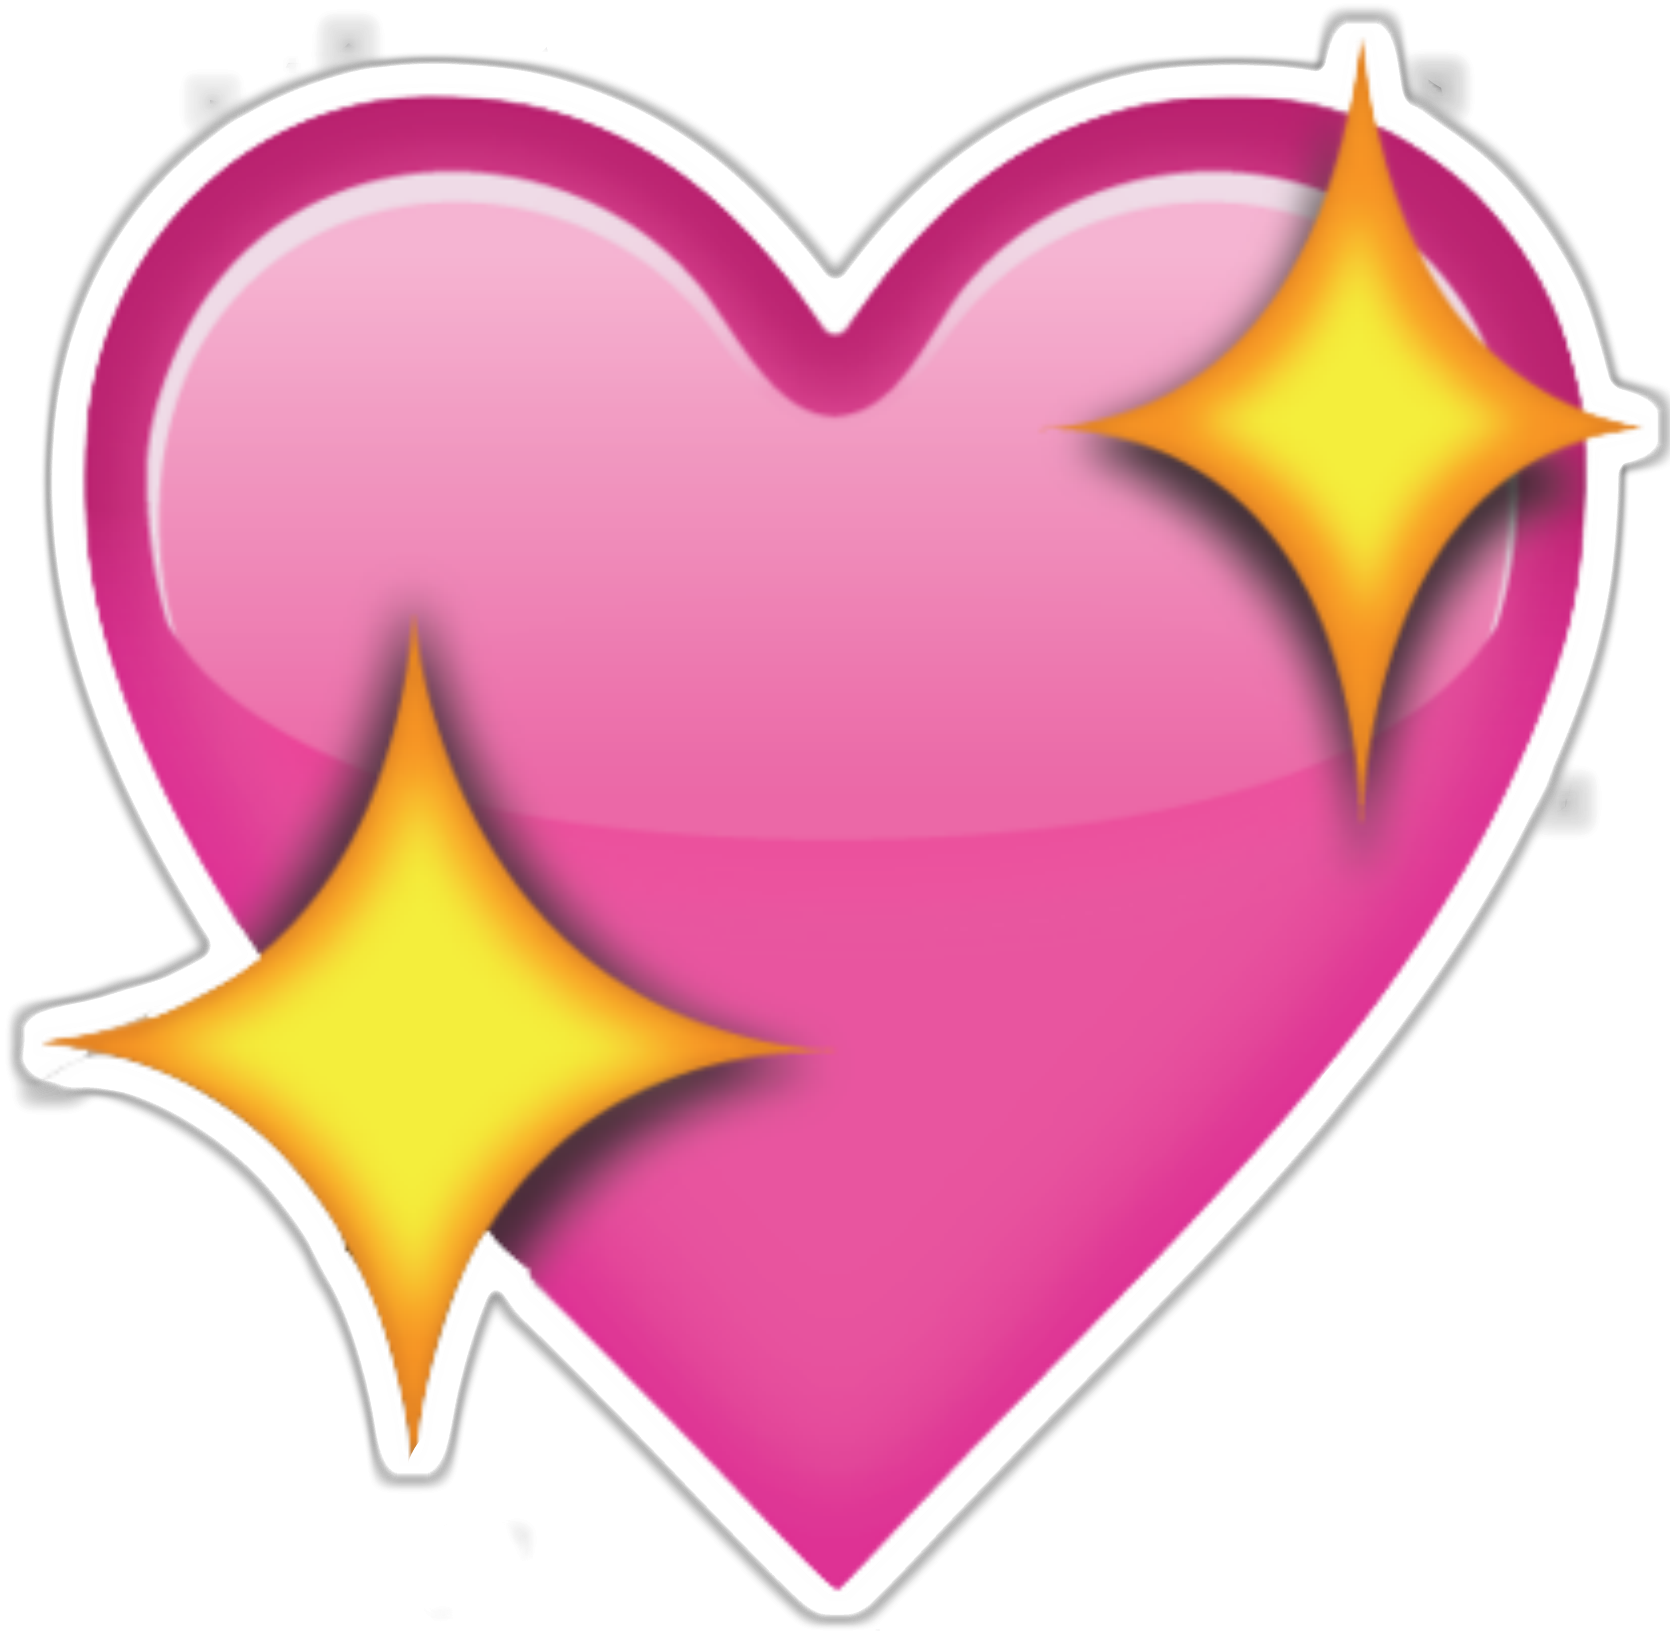 Imagens transparentes de estrela emoji no coraçÃ£o rosa #40573